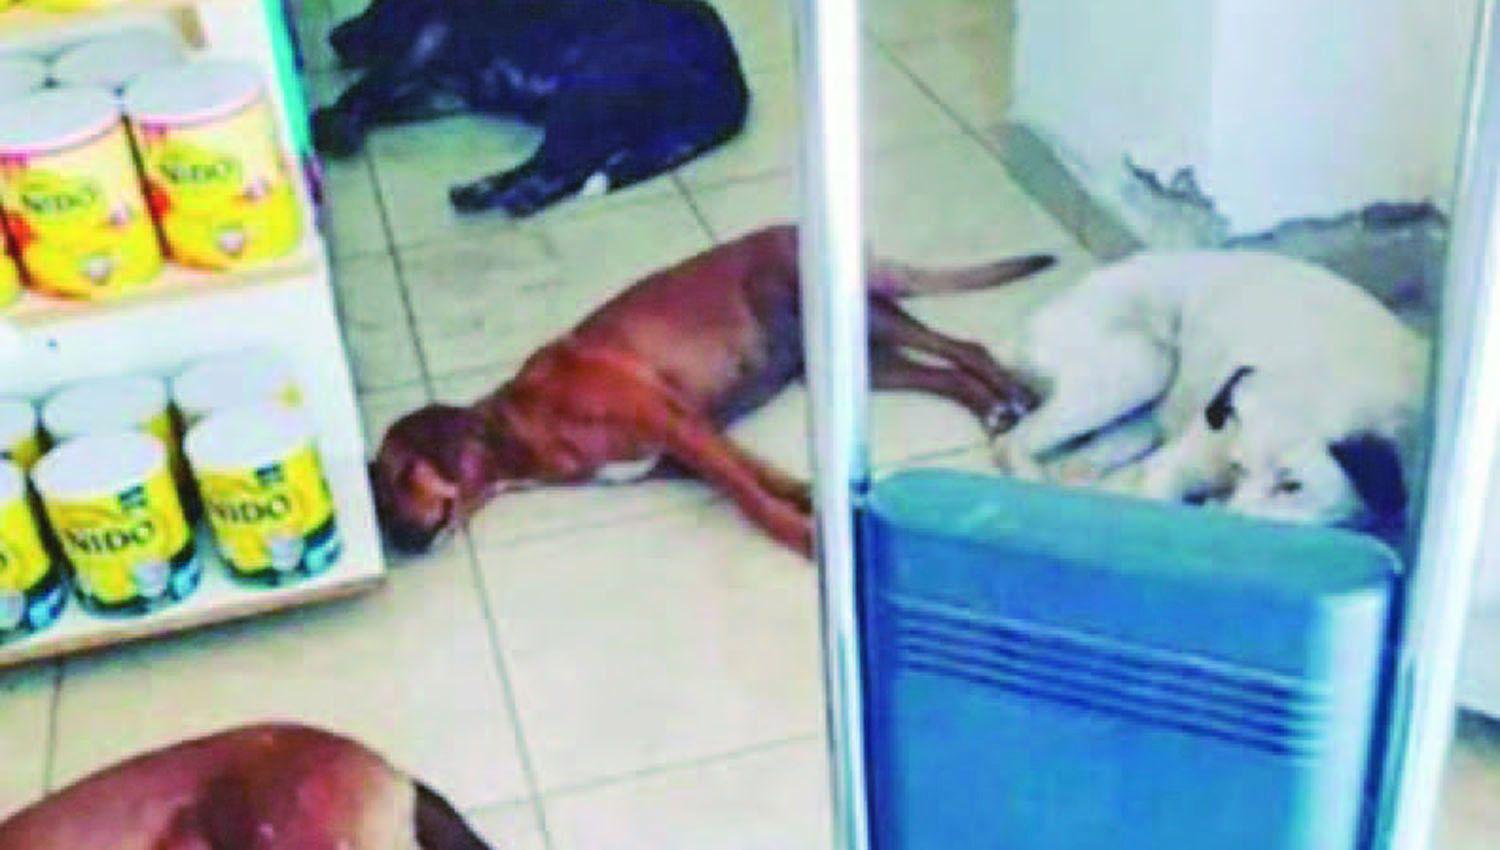 Farmacia recibe perros callejeros y los refugia del calor